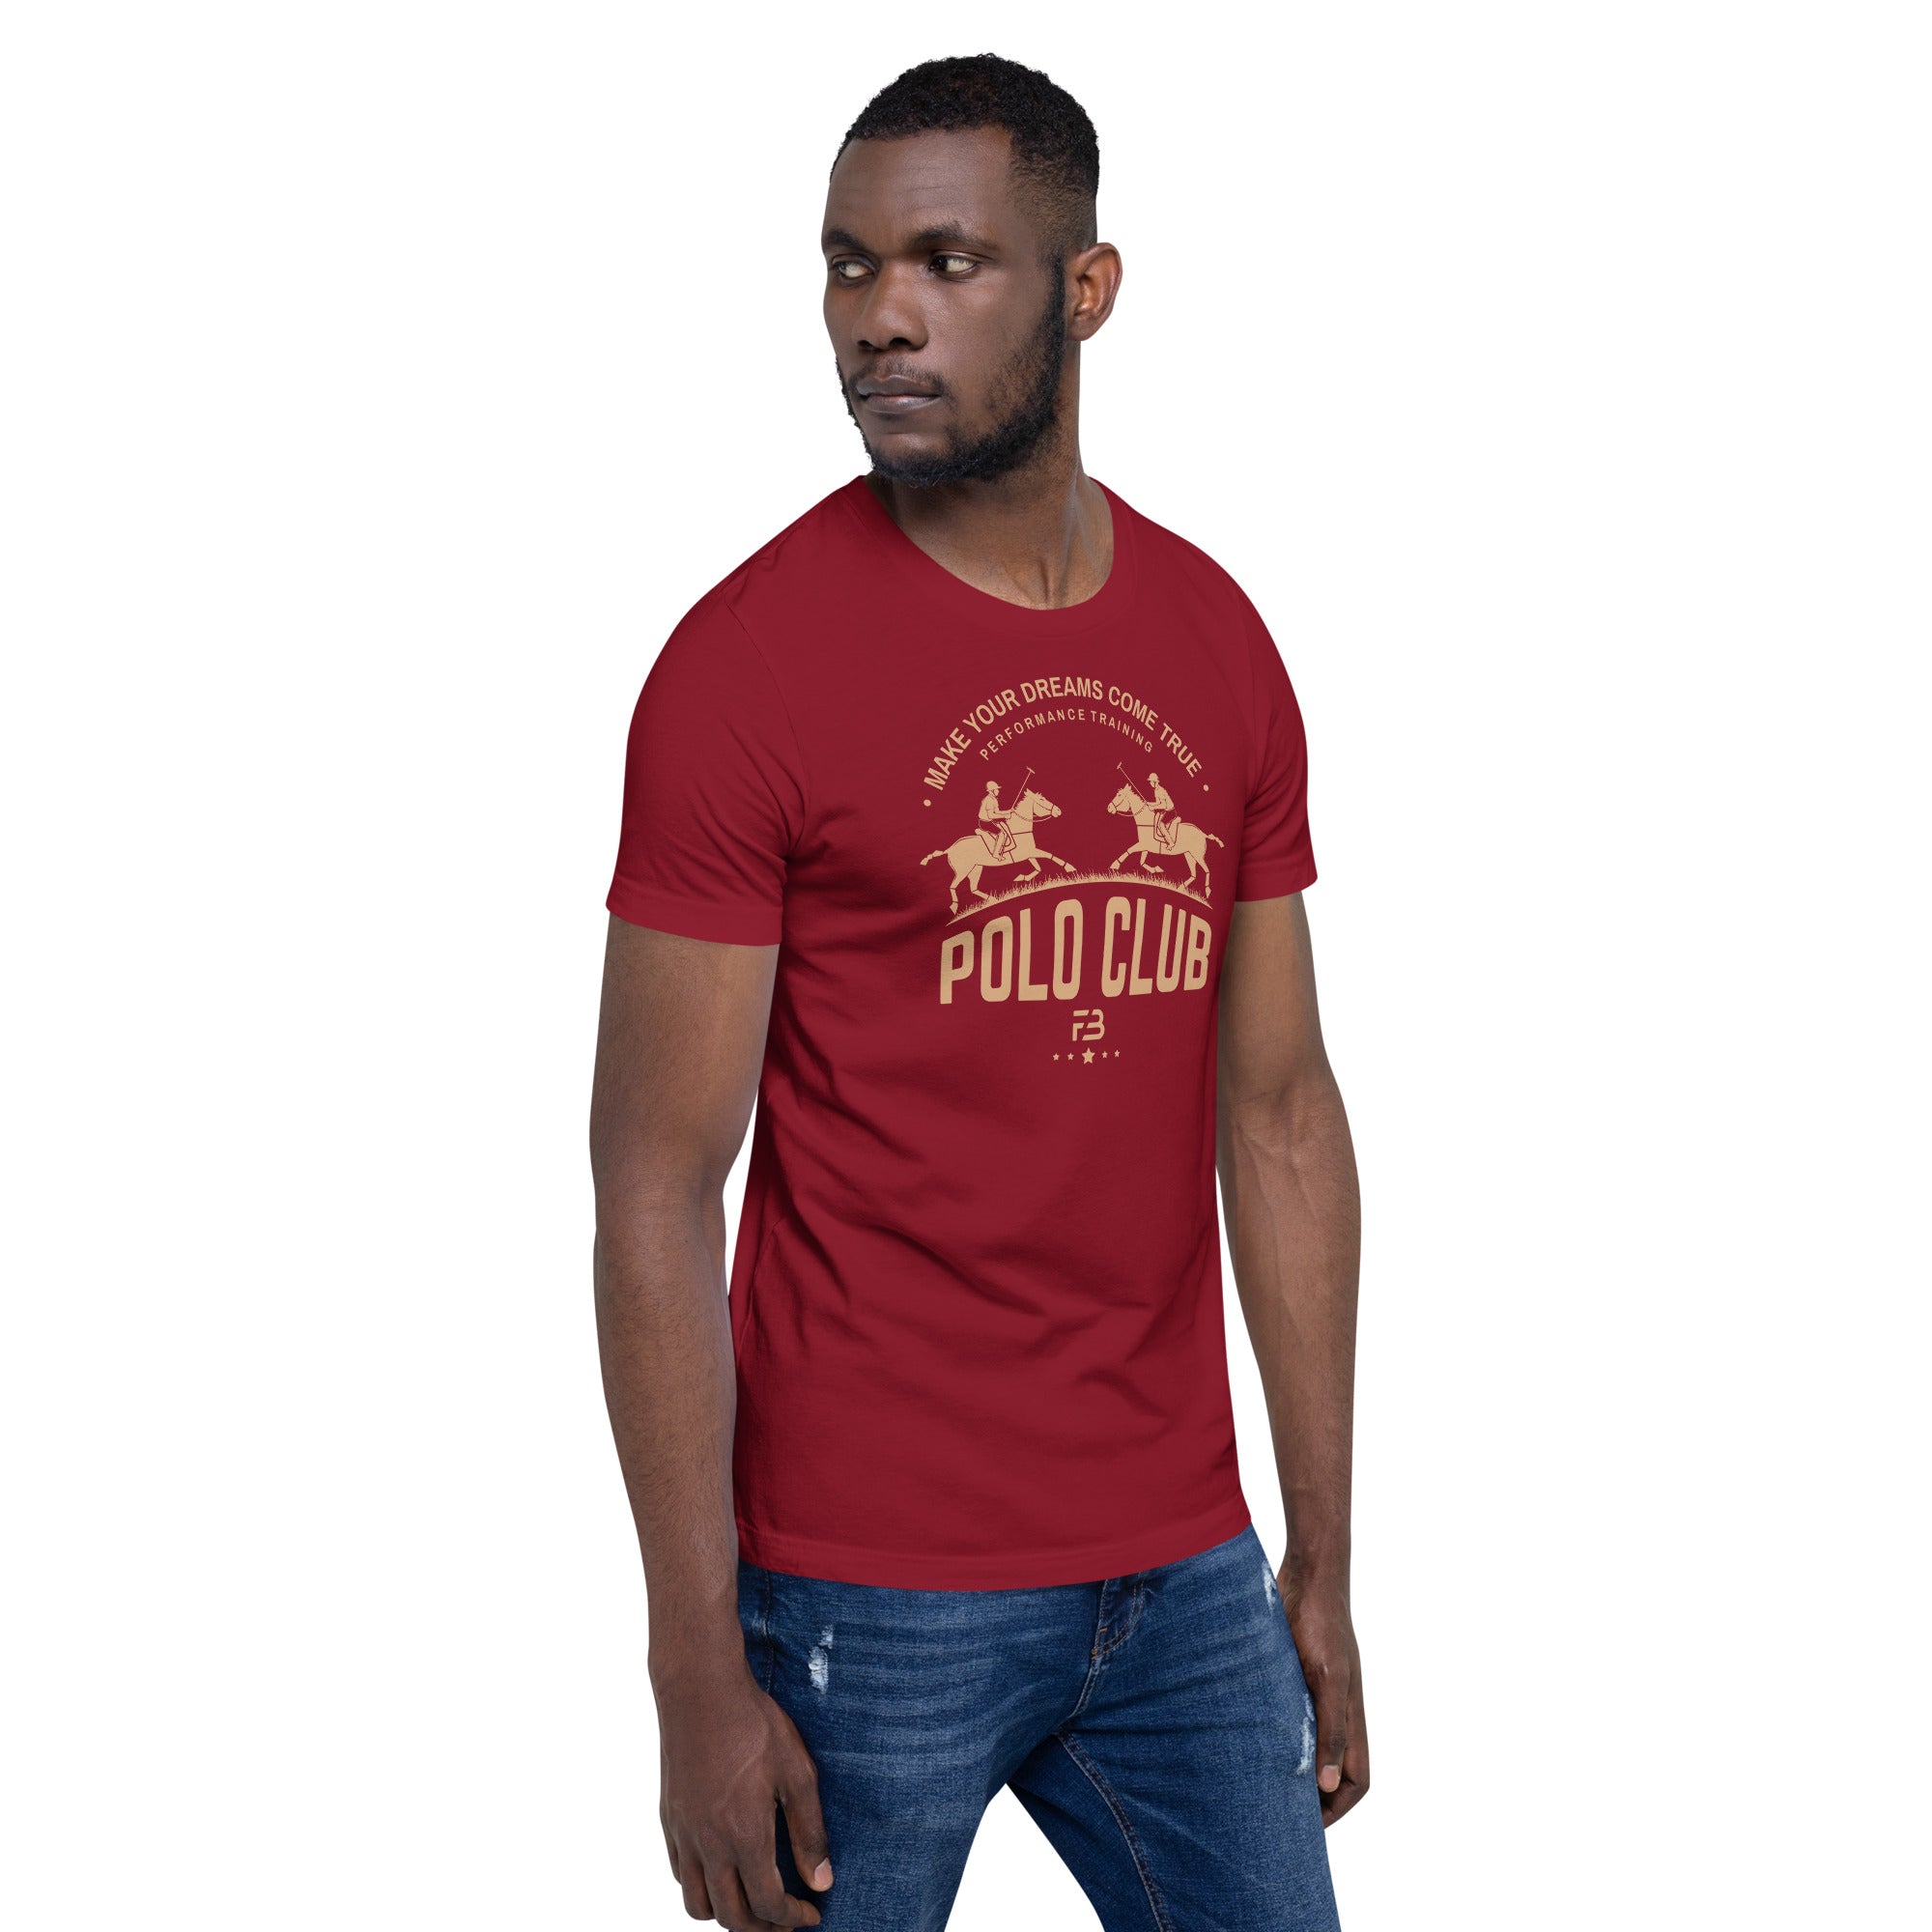 Polo Club FB T-shirt - FashionBox